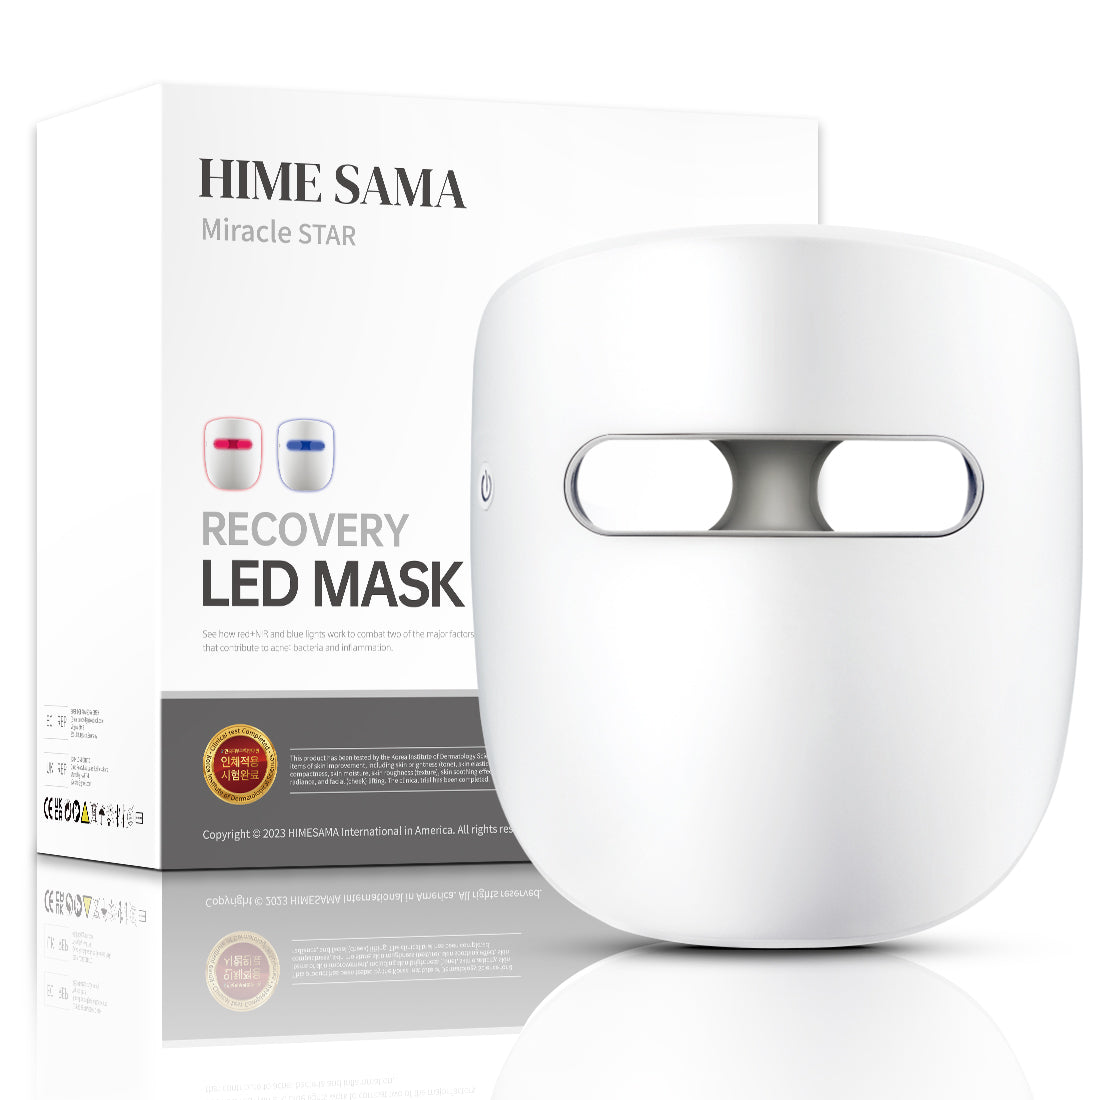 HIME SAMA - Masque facial à LED pour la thérapie par la lumière, lumière infrarouge/rouge et bleue pour la régénération de la peau du visage. (Miracle STAR)